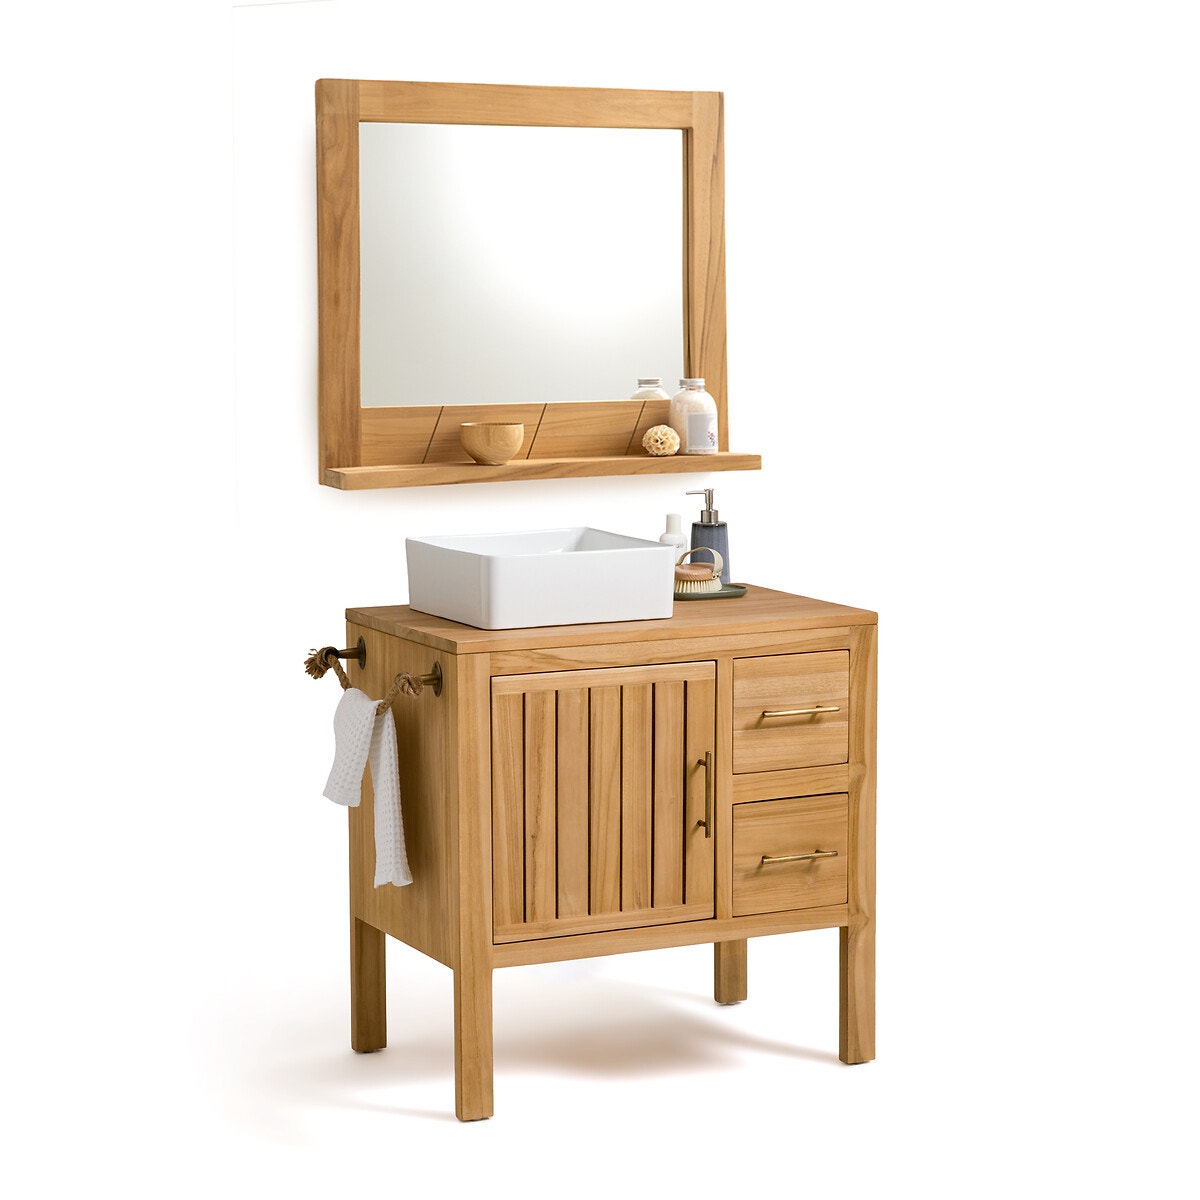 Σπίτι > Έπιπλα > Μπάνιο > Καθρέφτες μπάνιου Καθρέφτης μπάνιου από μασίφ ξύλο teak Π80 εκ. Μ12xΠ80xΥ70cm